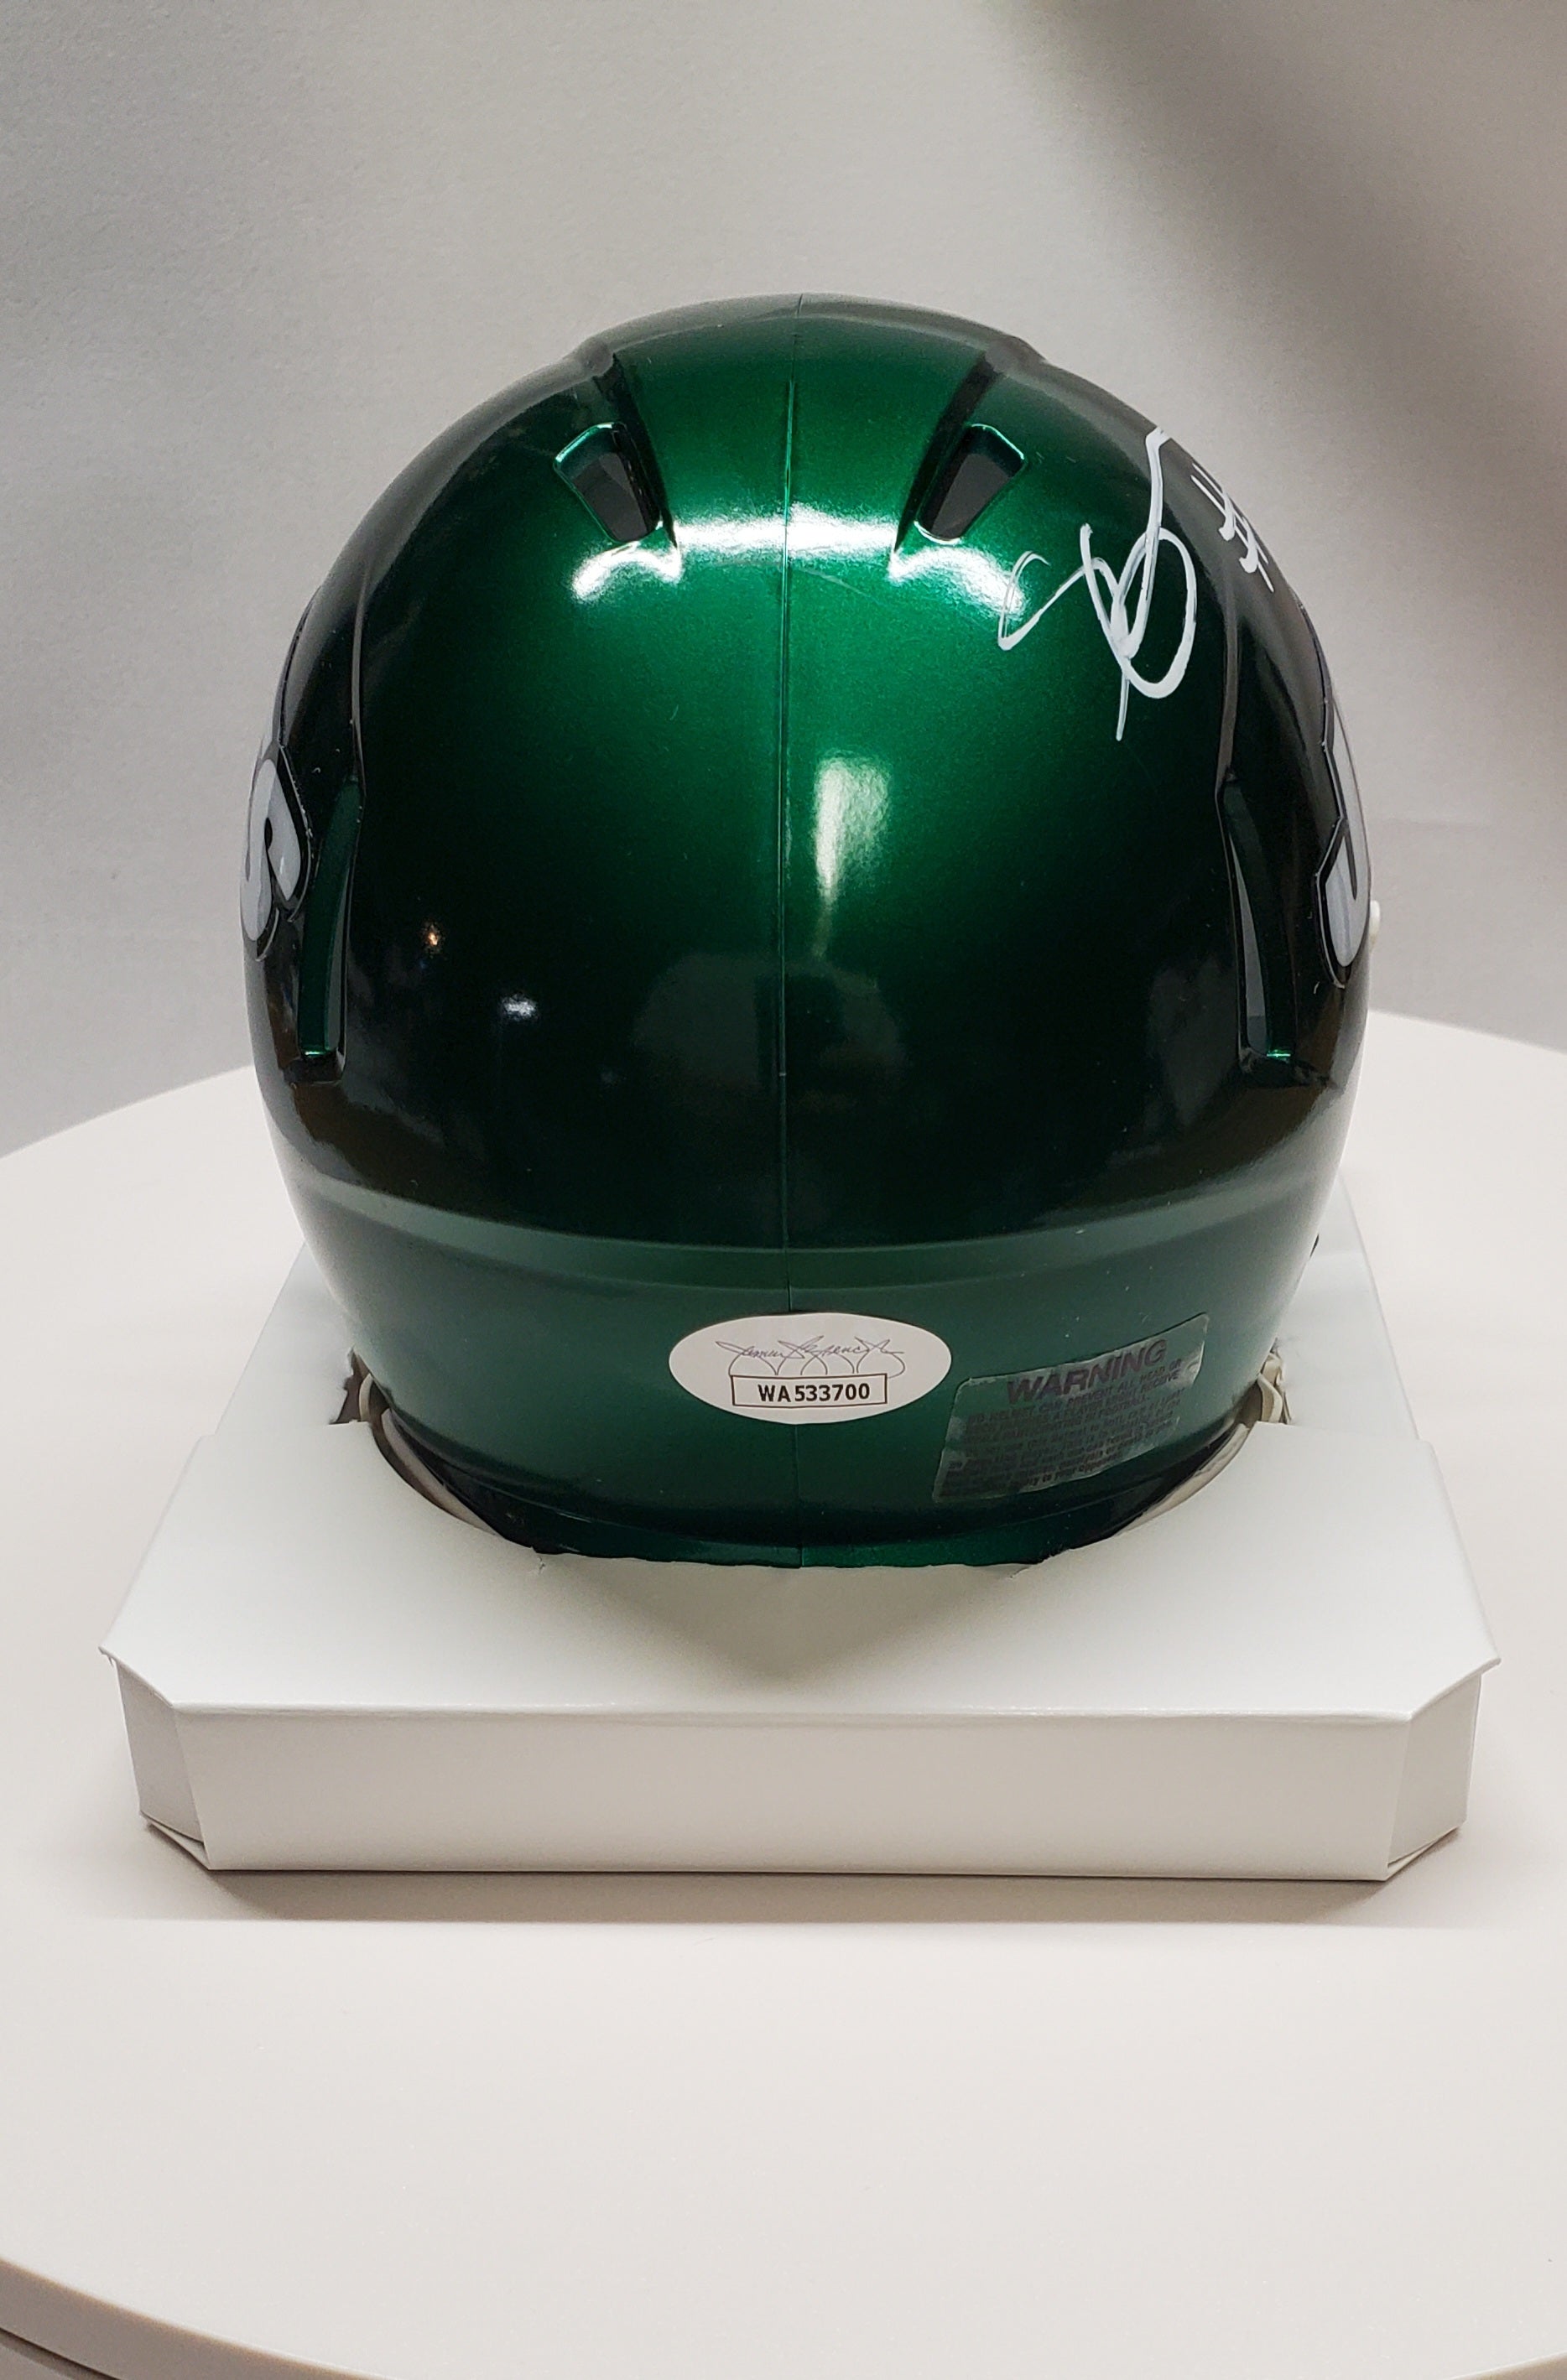 sauce gardner autographed helmet